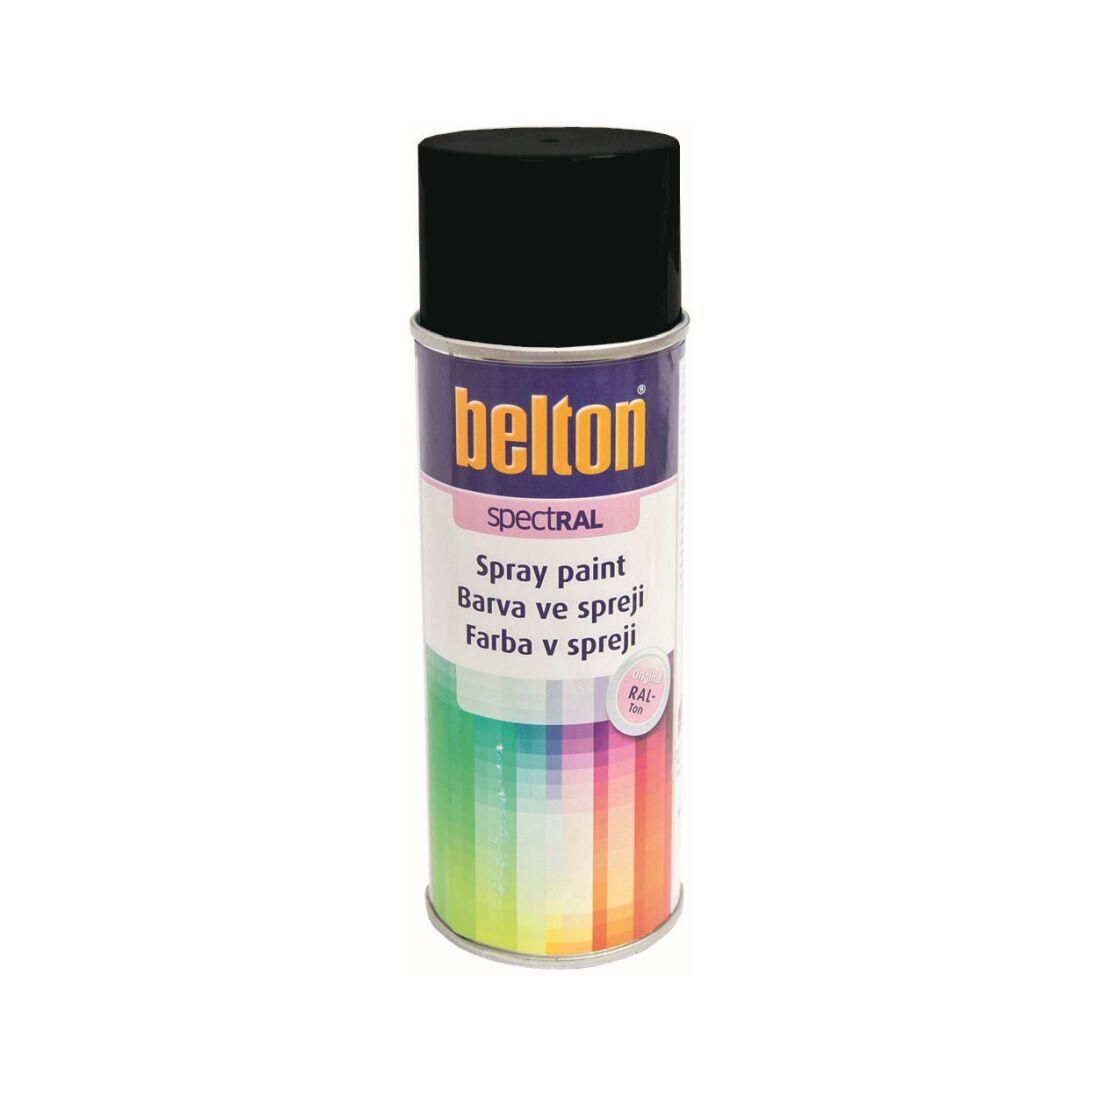 barva ve spreji BELTON RAL 9005pl, 400ml ČER pololesklá 0.31 Kg MAXMIX Sklad14 825570 5